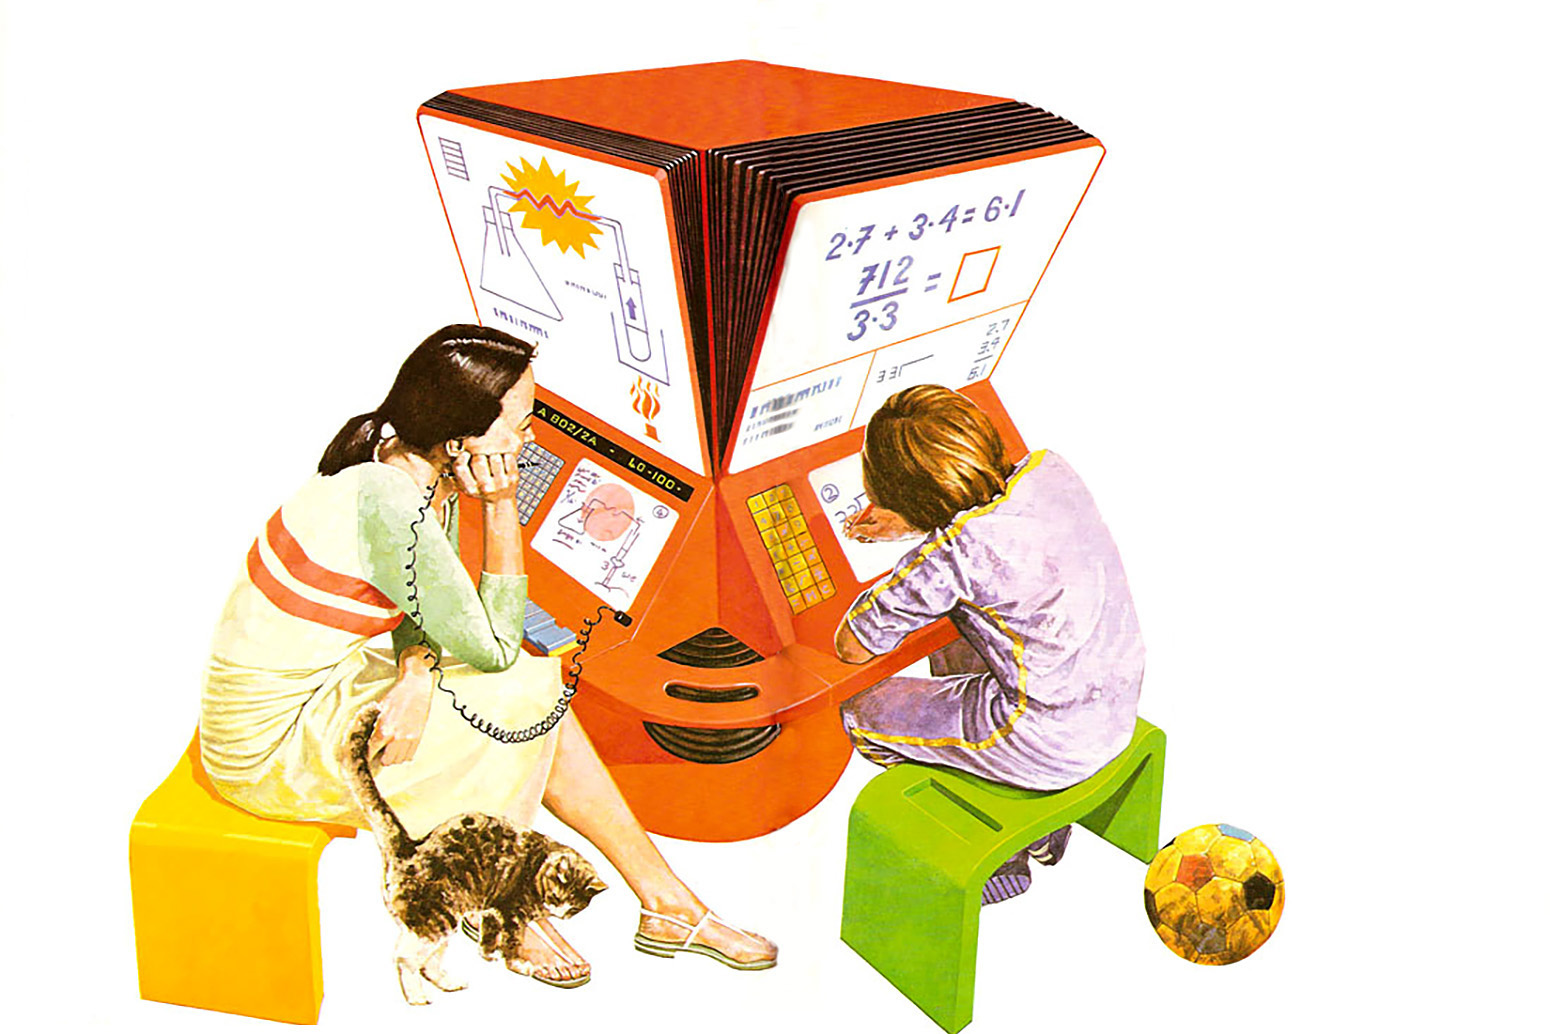 Домашняя работа в будущем. Иллюстрация из книги Нила Ардли «Школа, работа и игра». 1981